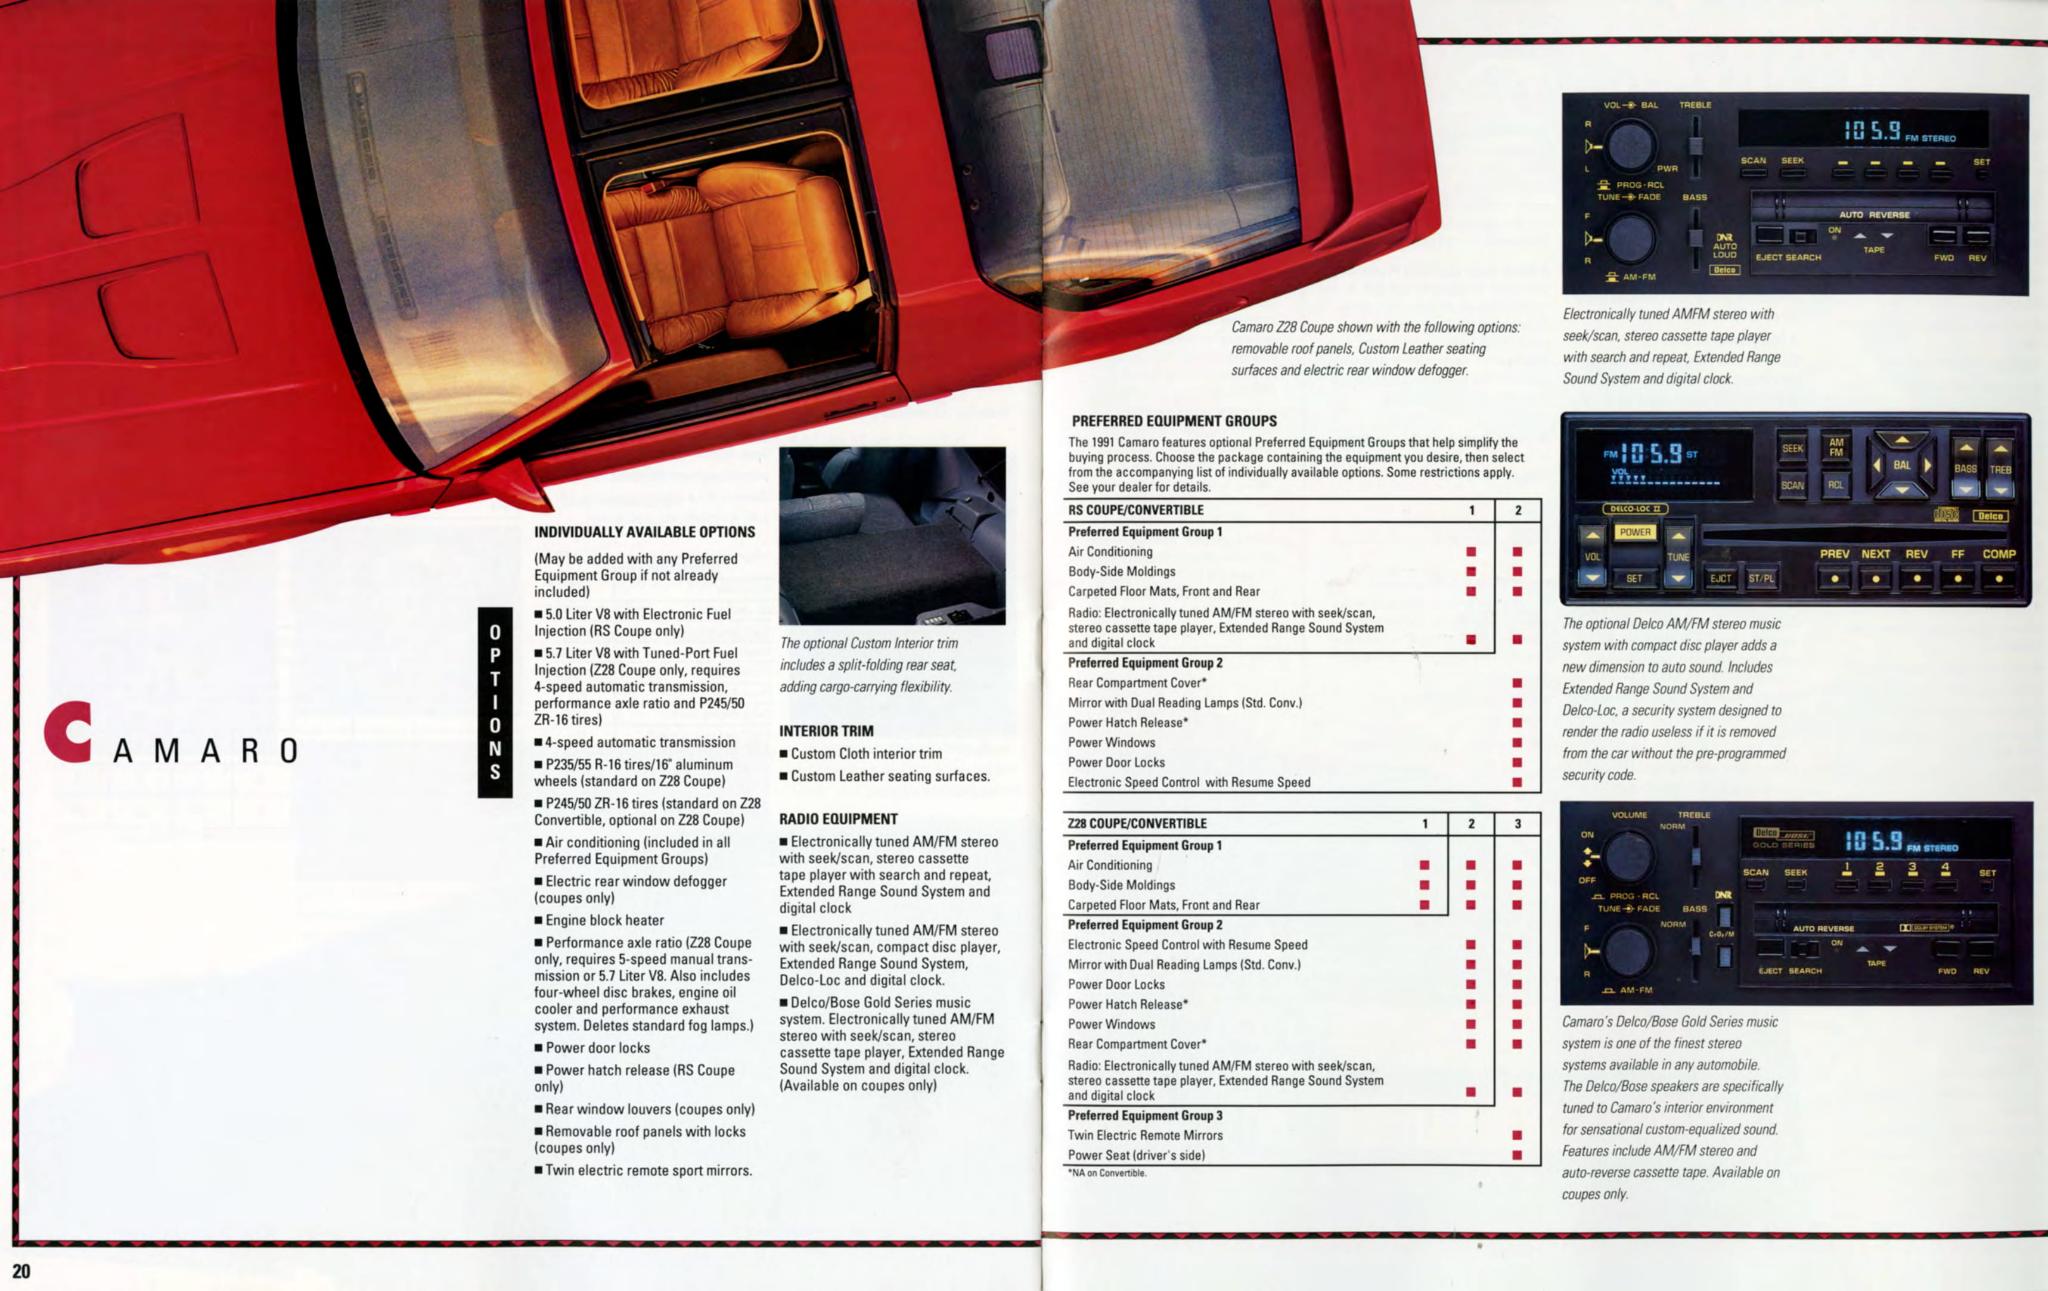 1991 Camaro Brochure